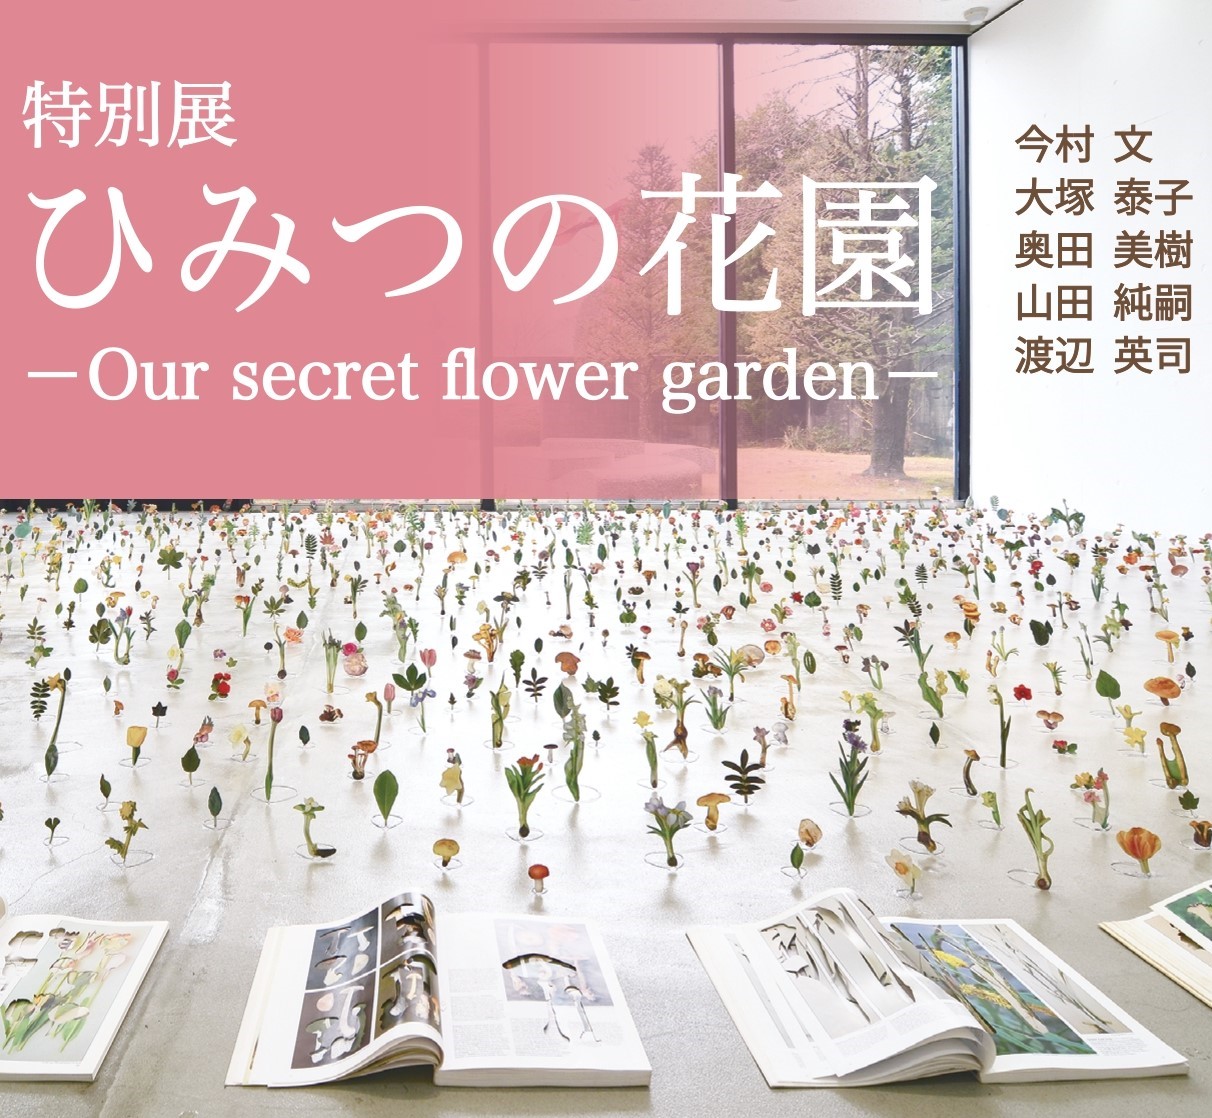 特別展 ひみつの花園 Our Secret Flower Garden 大阪府 東大阪市民美術センターで 4月28日 6月6日開催 東大阪市民美術センターのプレスリリース